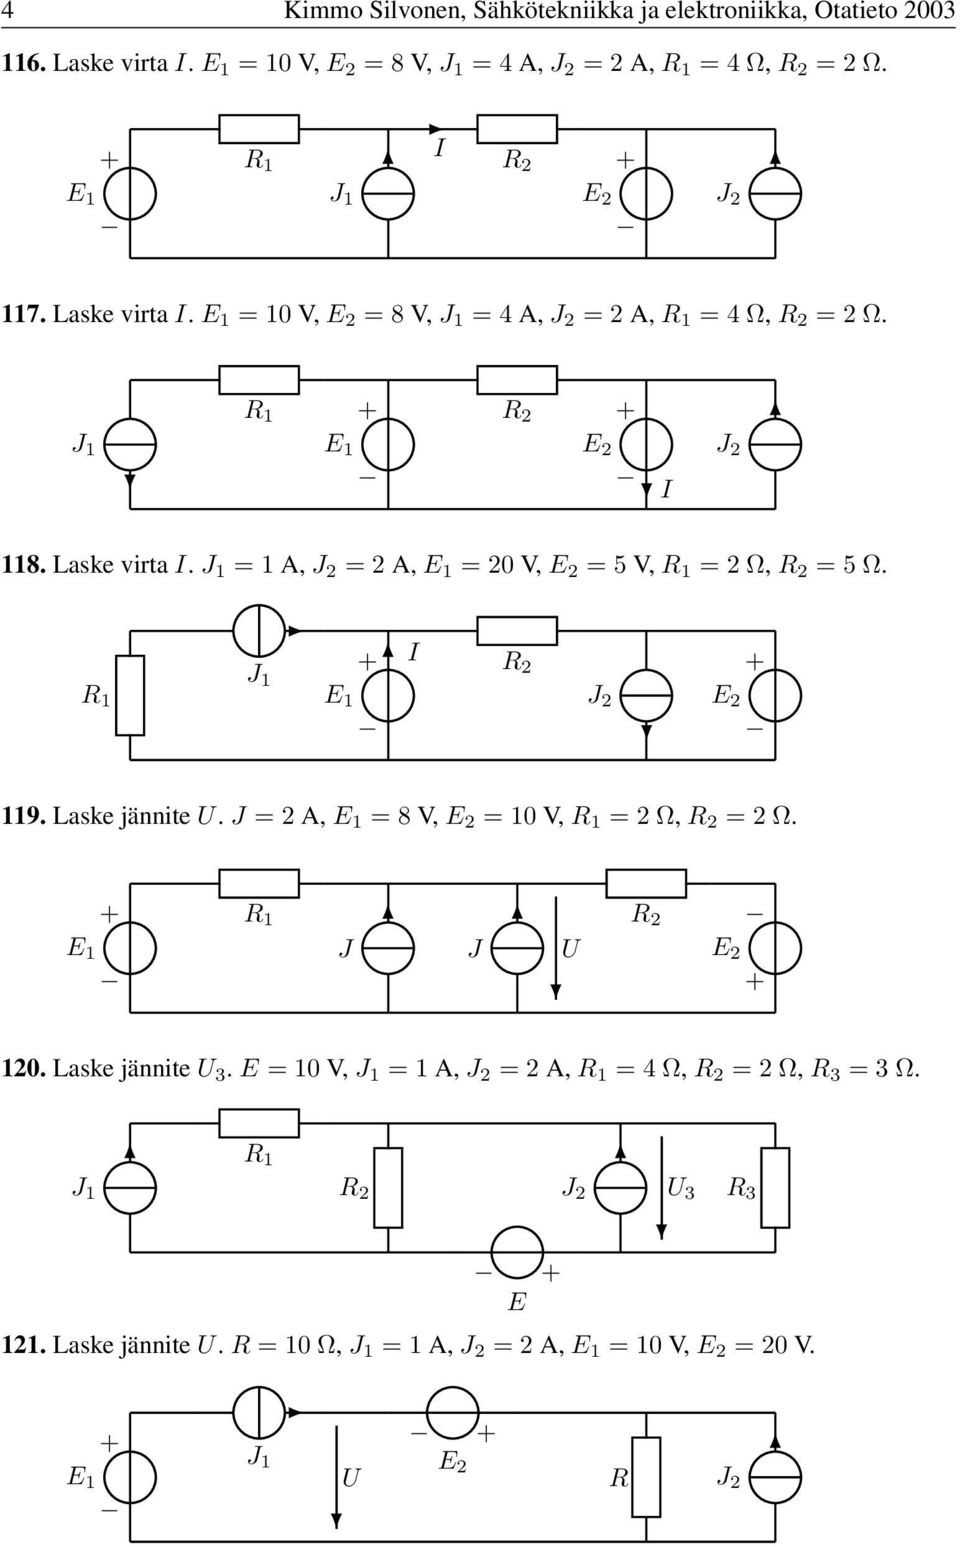 Laske virta. =A, =2A, =20V, =5V, =2Ω, =5Ω. 9. Laske jännite. =2A, =8V, =0V, =2Ω, =2Ω.